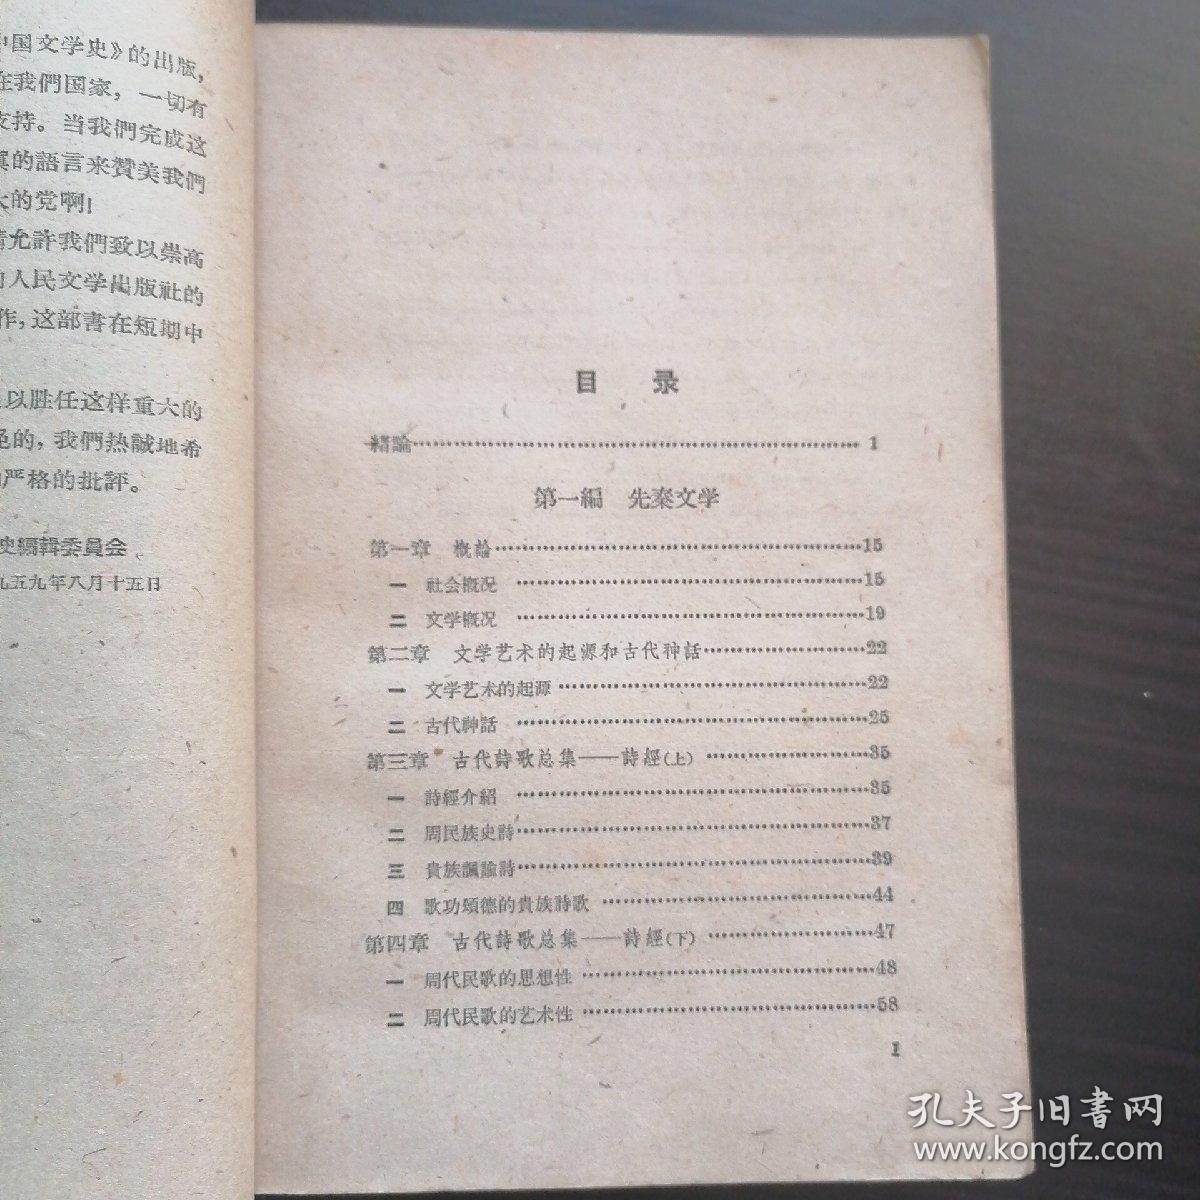 中国文学史  一   
北京大学中文系文学专门化1955级集体编著